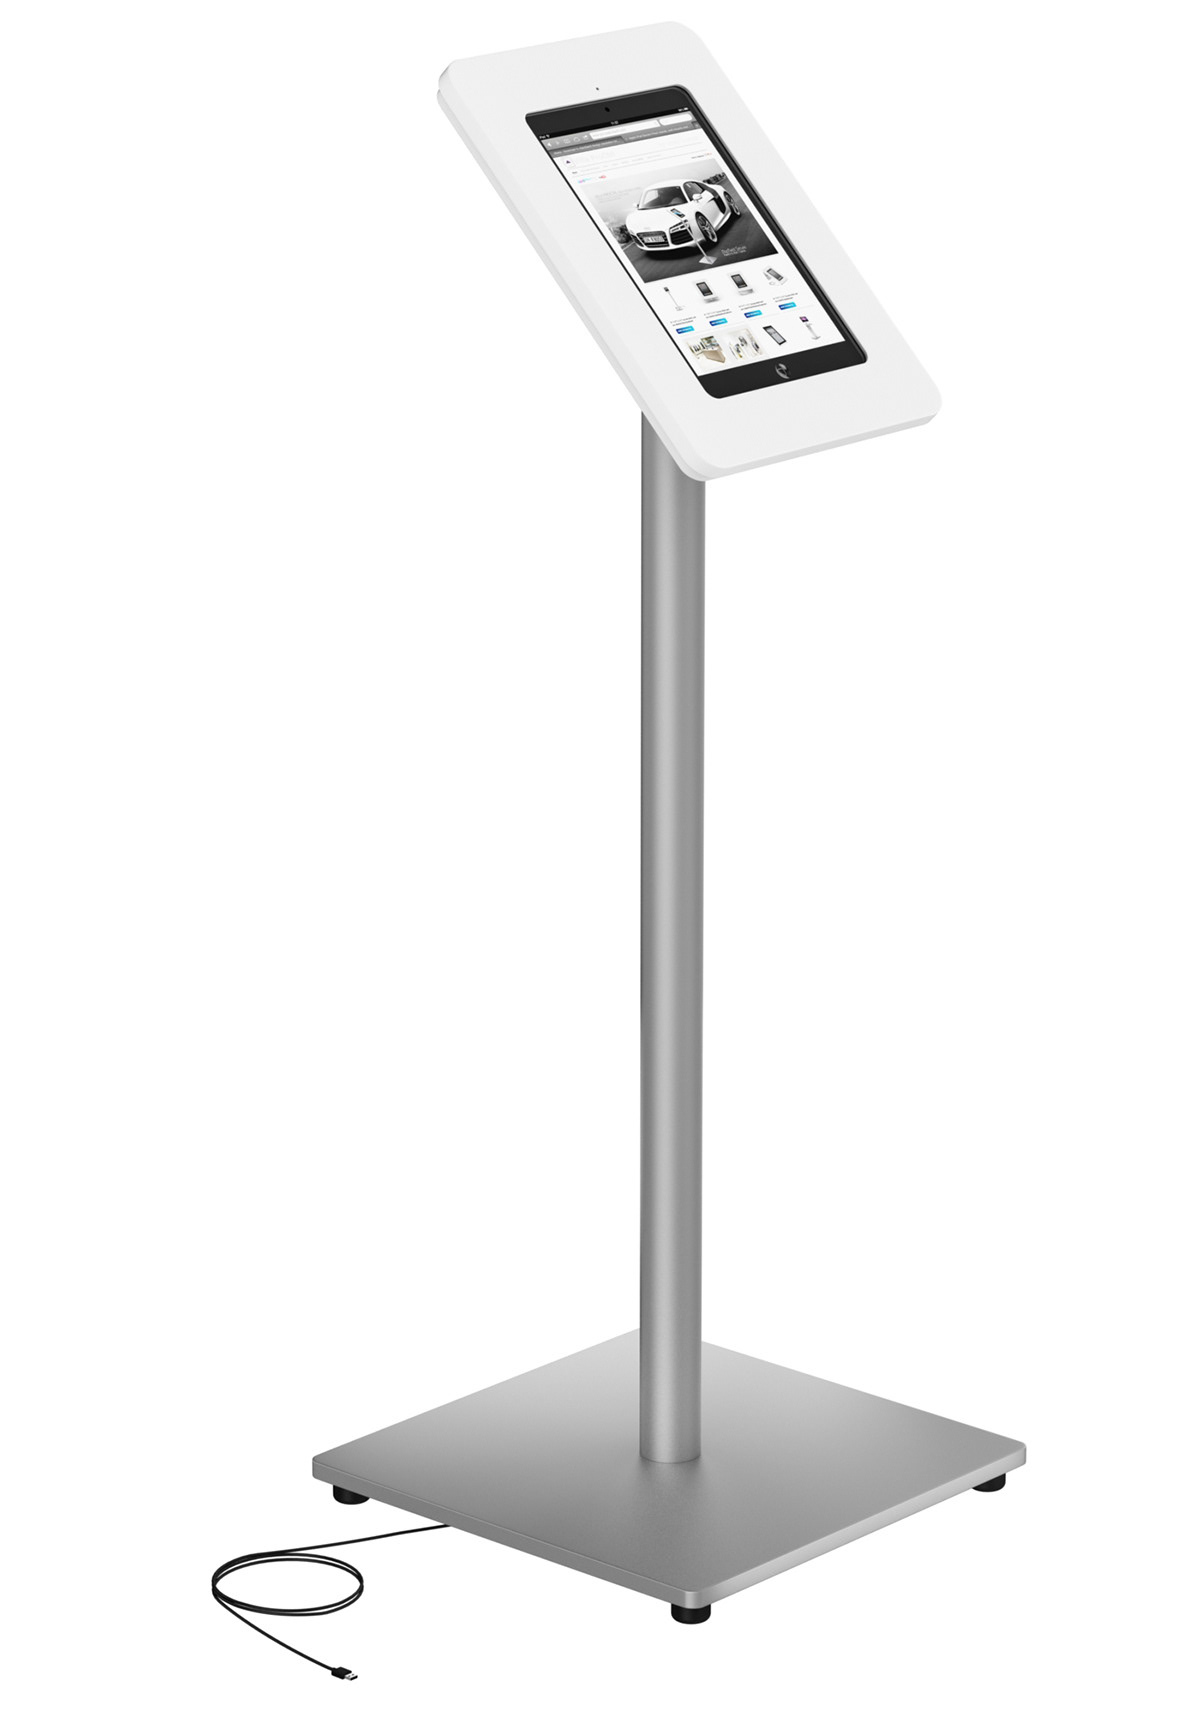 iPad Air stand apple ipad air ipad air Floor stand ipad